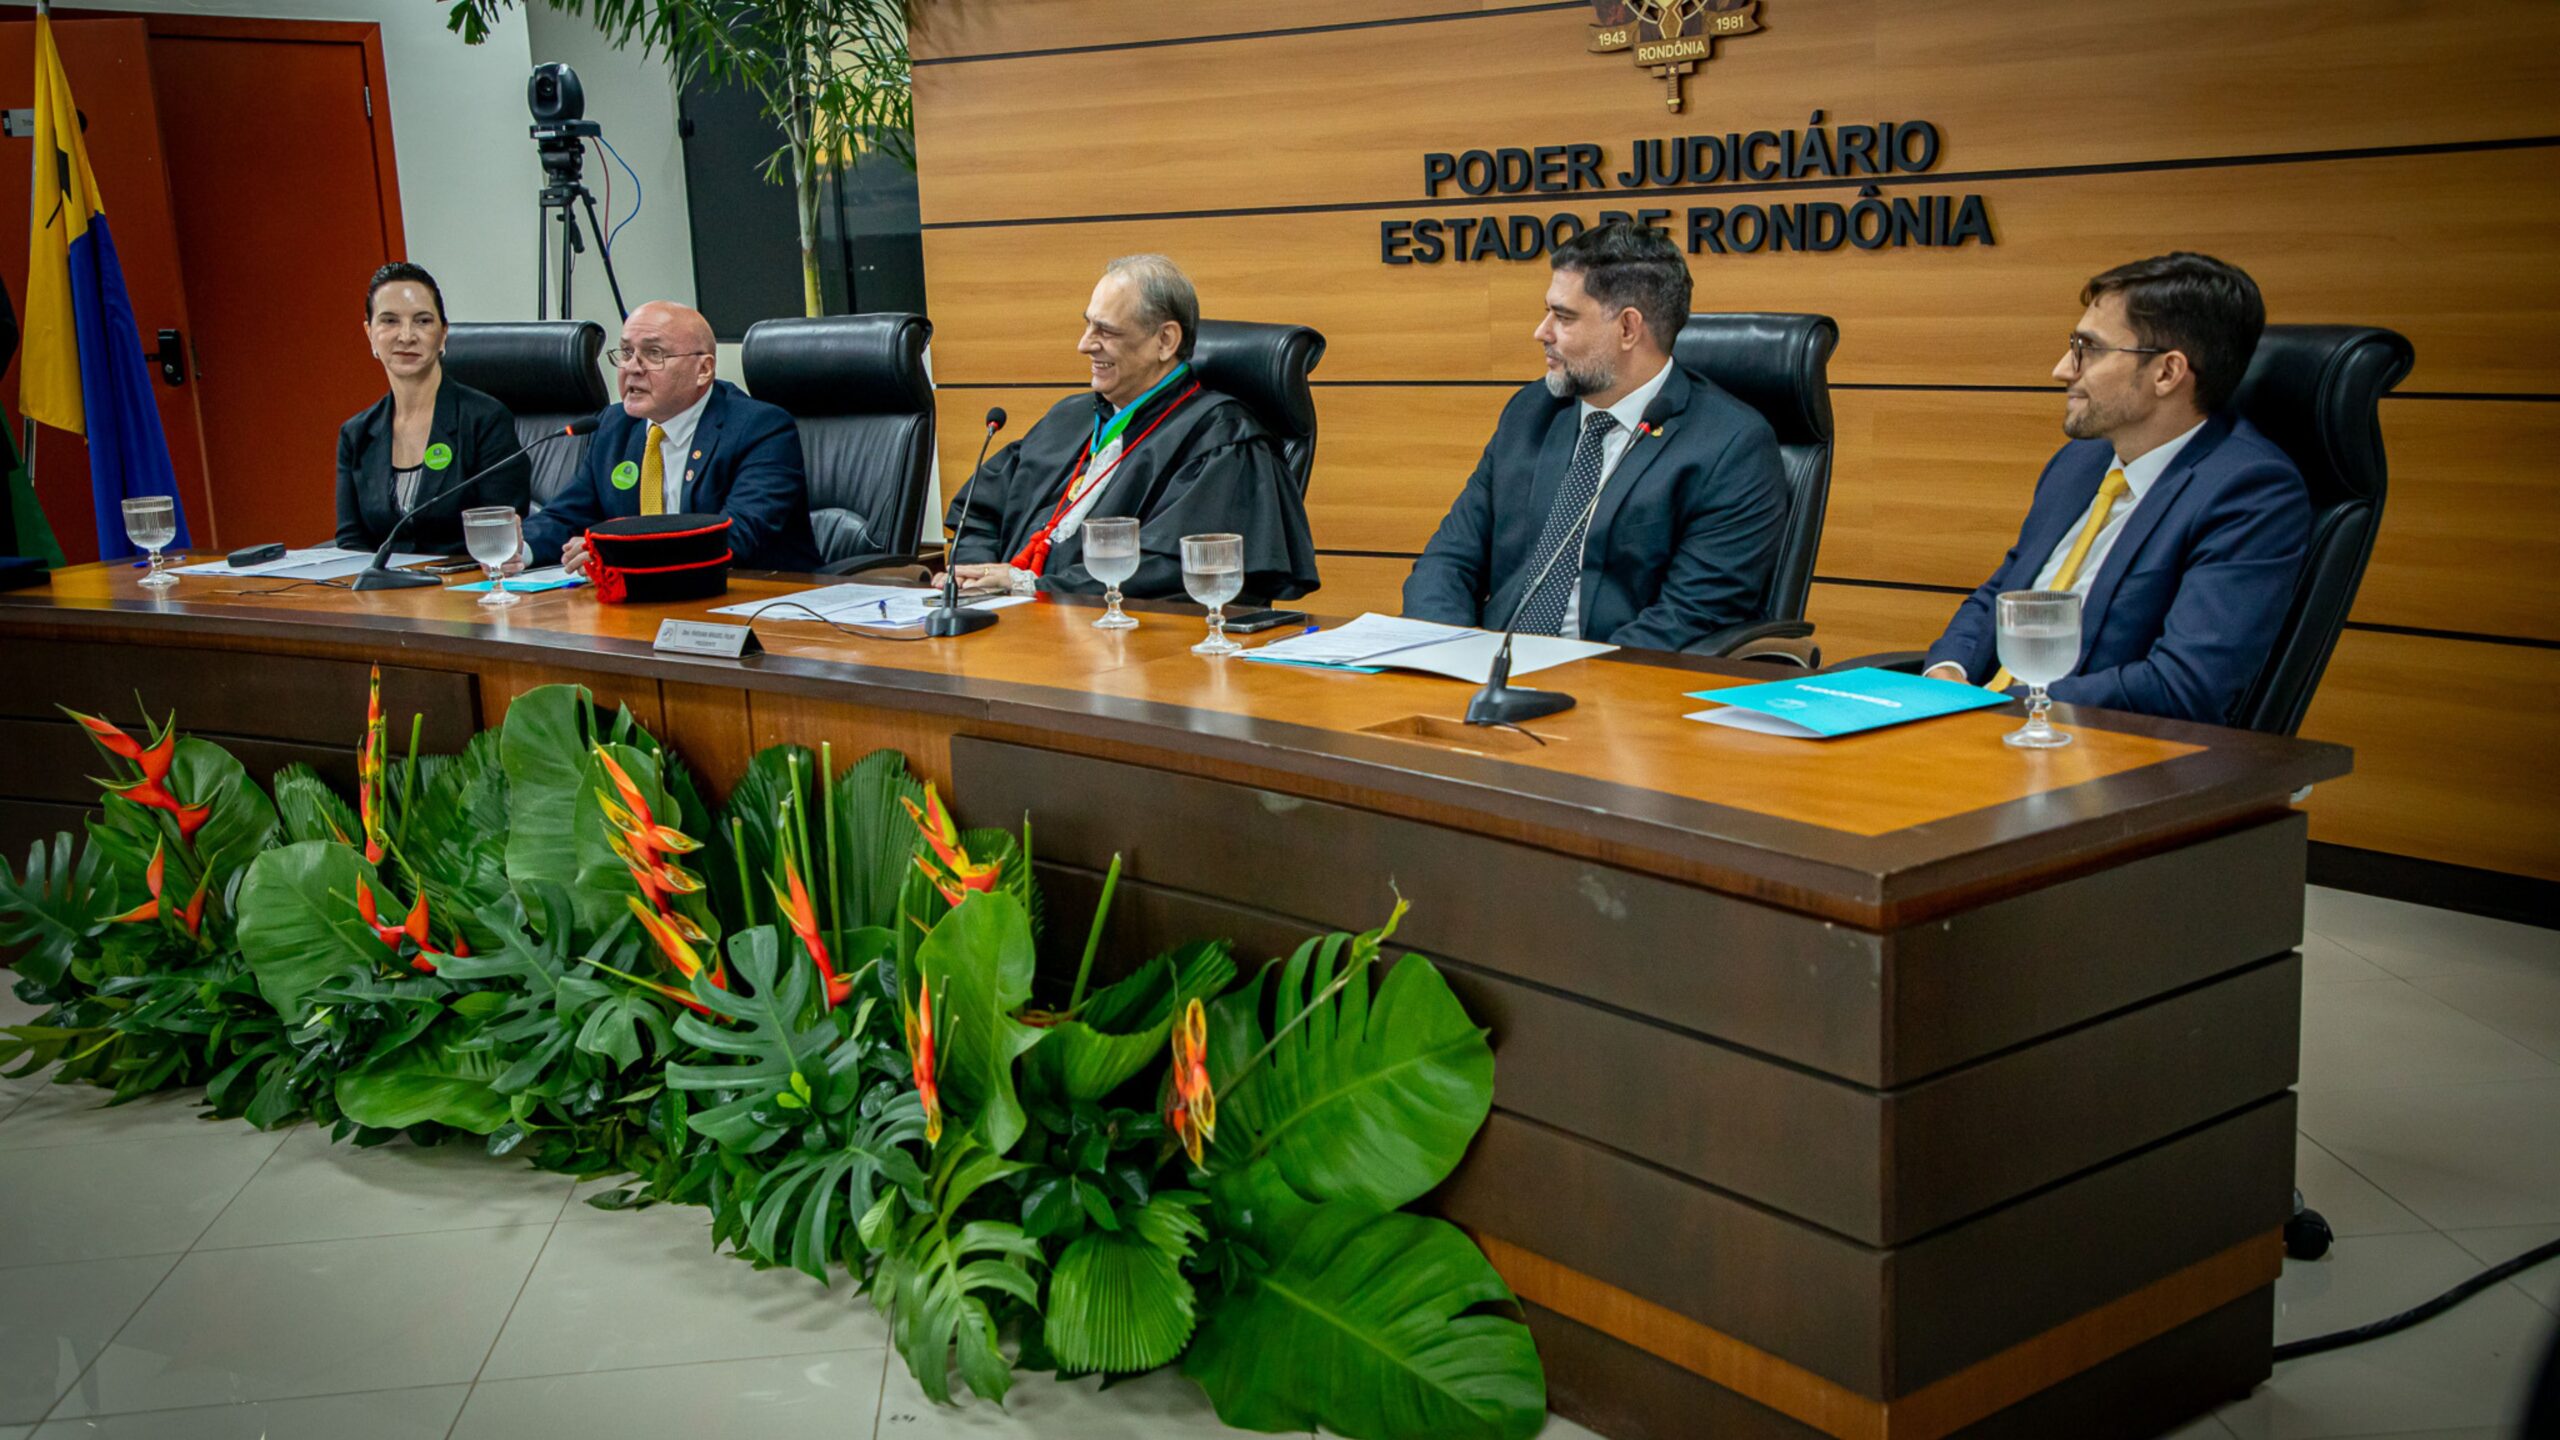 PGE/RO participa da sessão solene de posse de novos juízes substitutos em Rondônia.